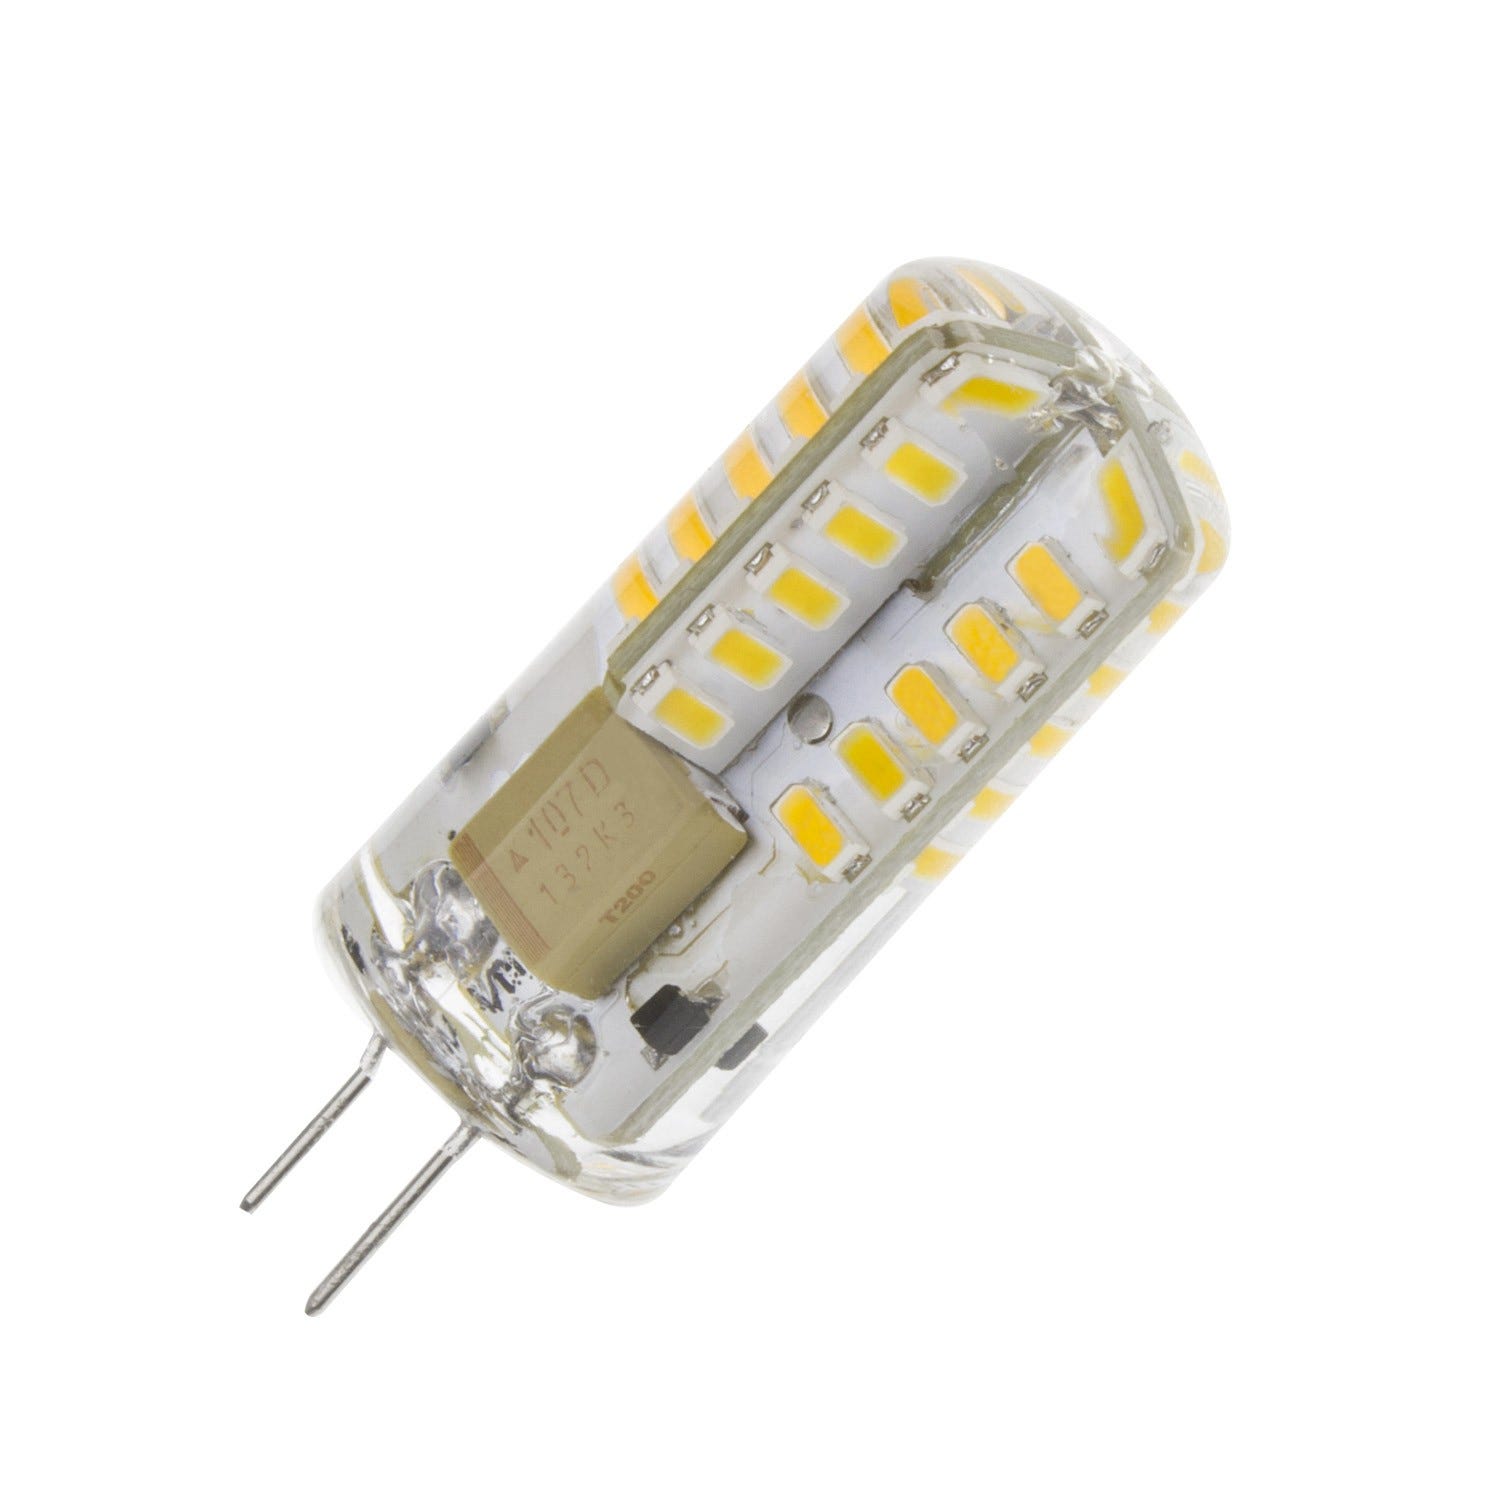 HGHC G4 led 220V 2W 2700K blanc chaud 200LM, ampoules en silicone  remplacent les ampoules halogènes traditionnelles 20W, angle de faisceau de  360 °, paquet de 5 unites : : Luminaires et Éclairage